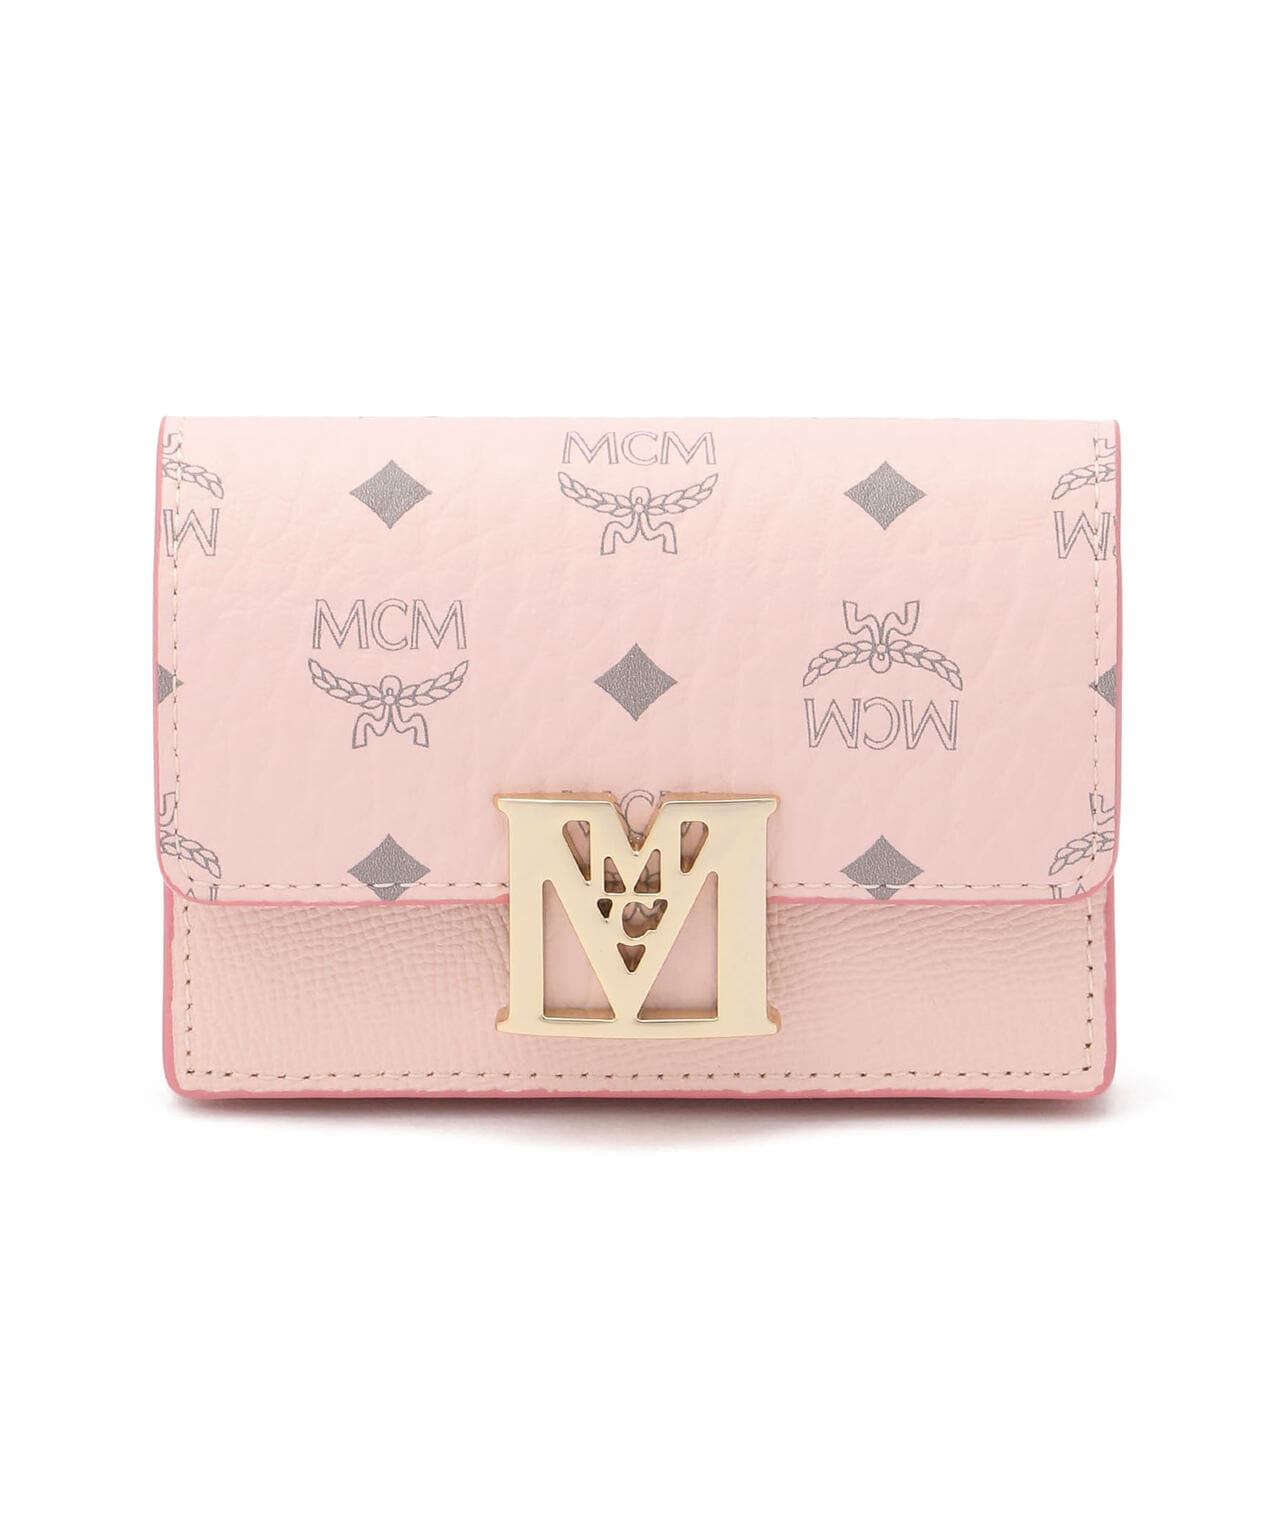 MCM財布 - 長財布